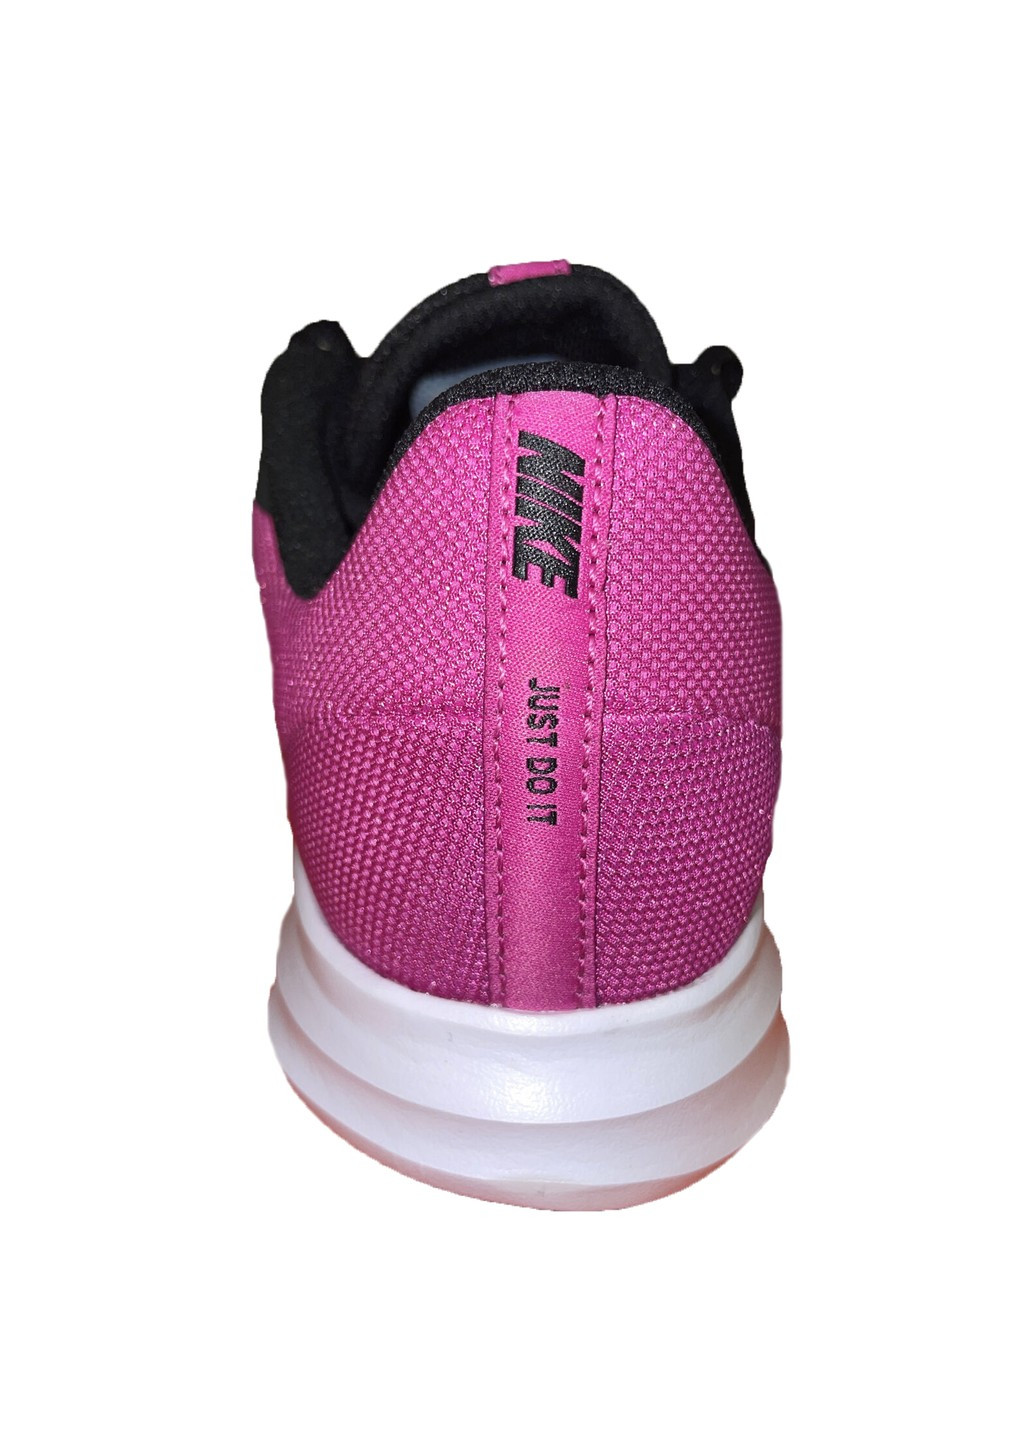 Розовые кроссовки Nike